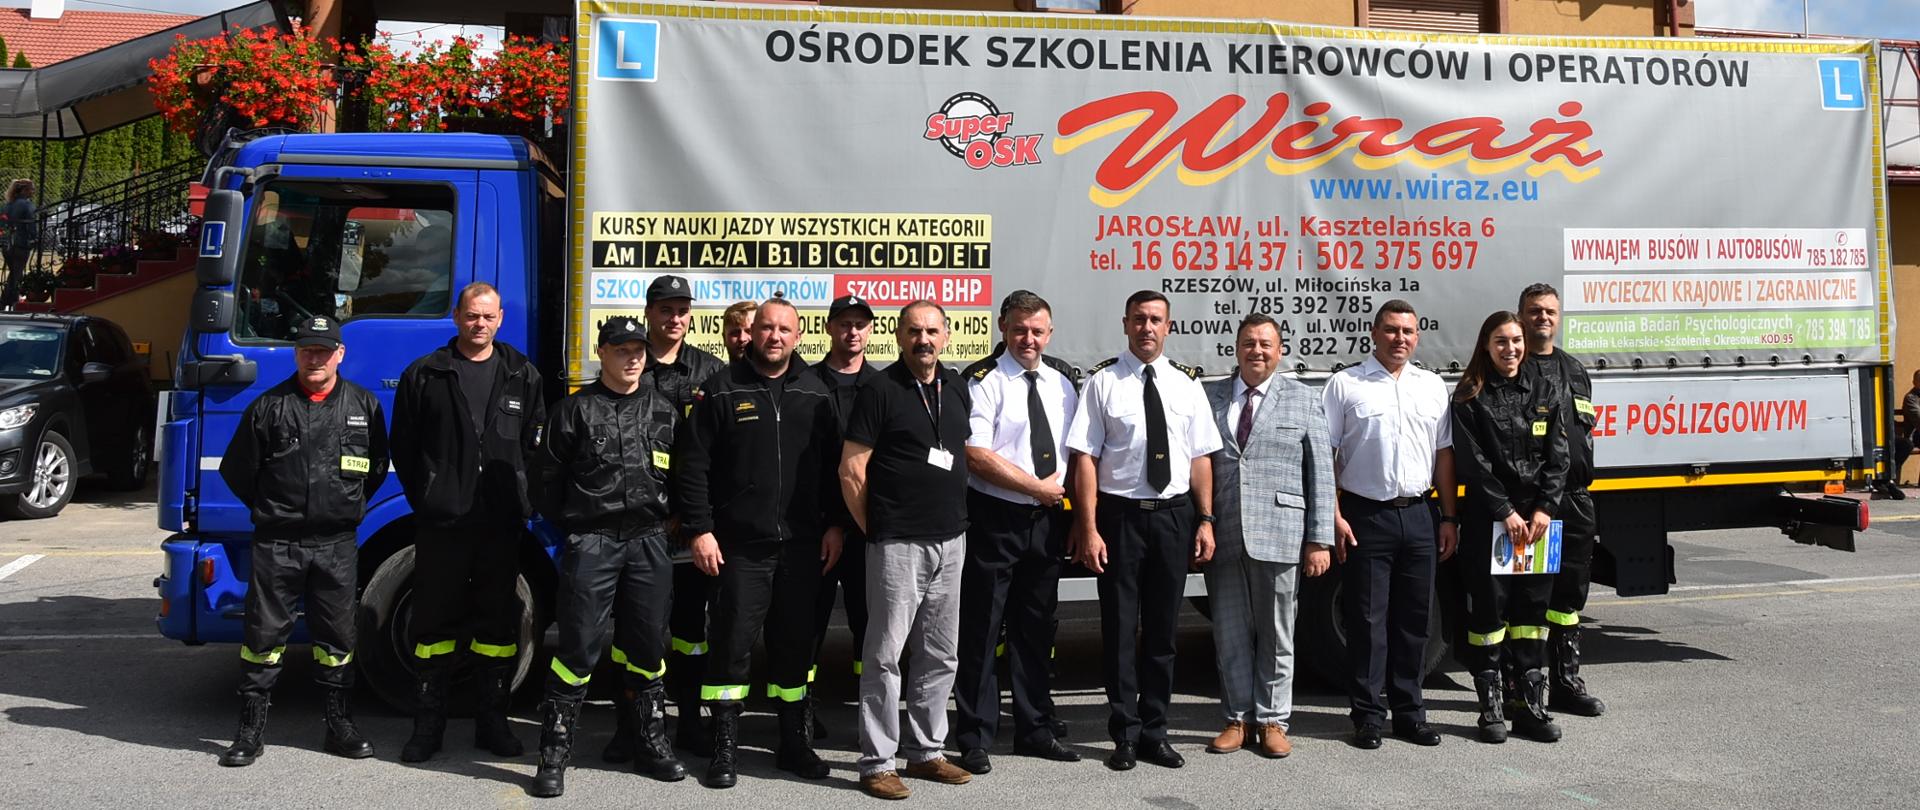 Na zdjęciu widać strażaków oraz prezes ośrodka szkolenia "Wiraż", pozujących przed ciężarówką z reklamą firmy.